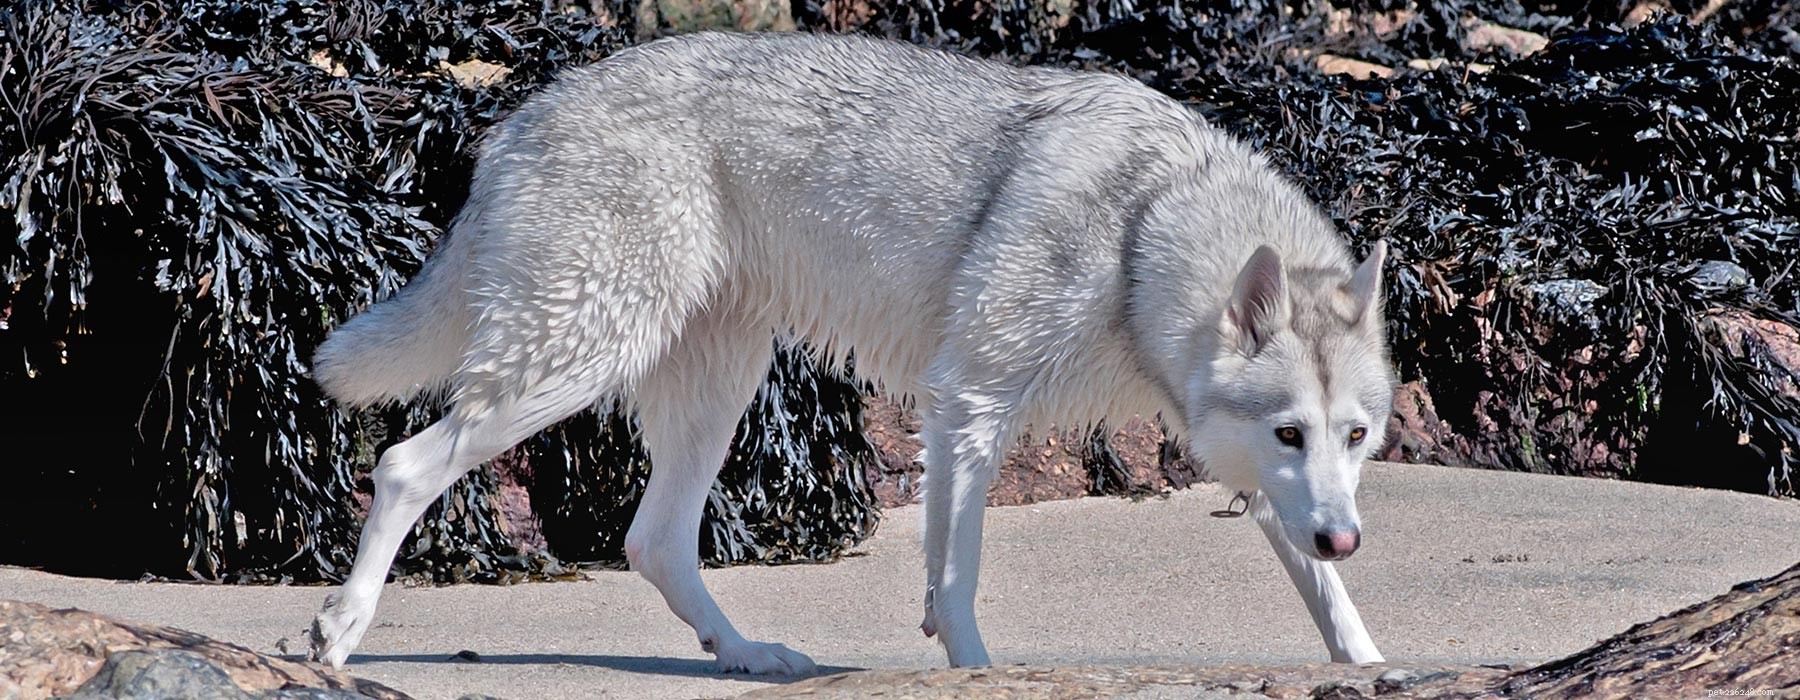 Noordelijke Inuit-hond:het kruis dat op een wolf lijkt